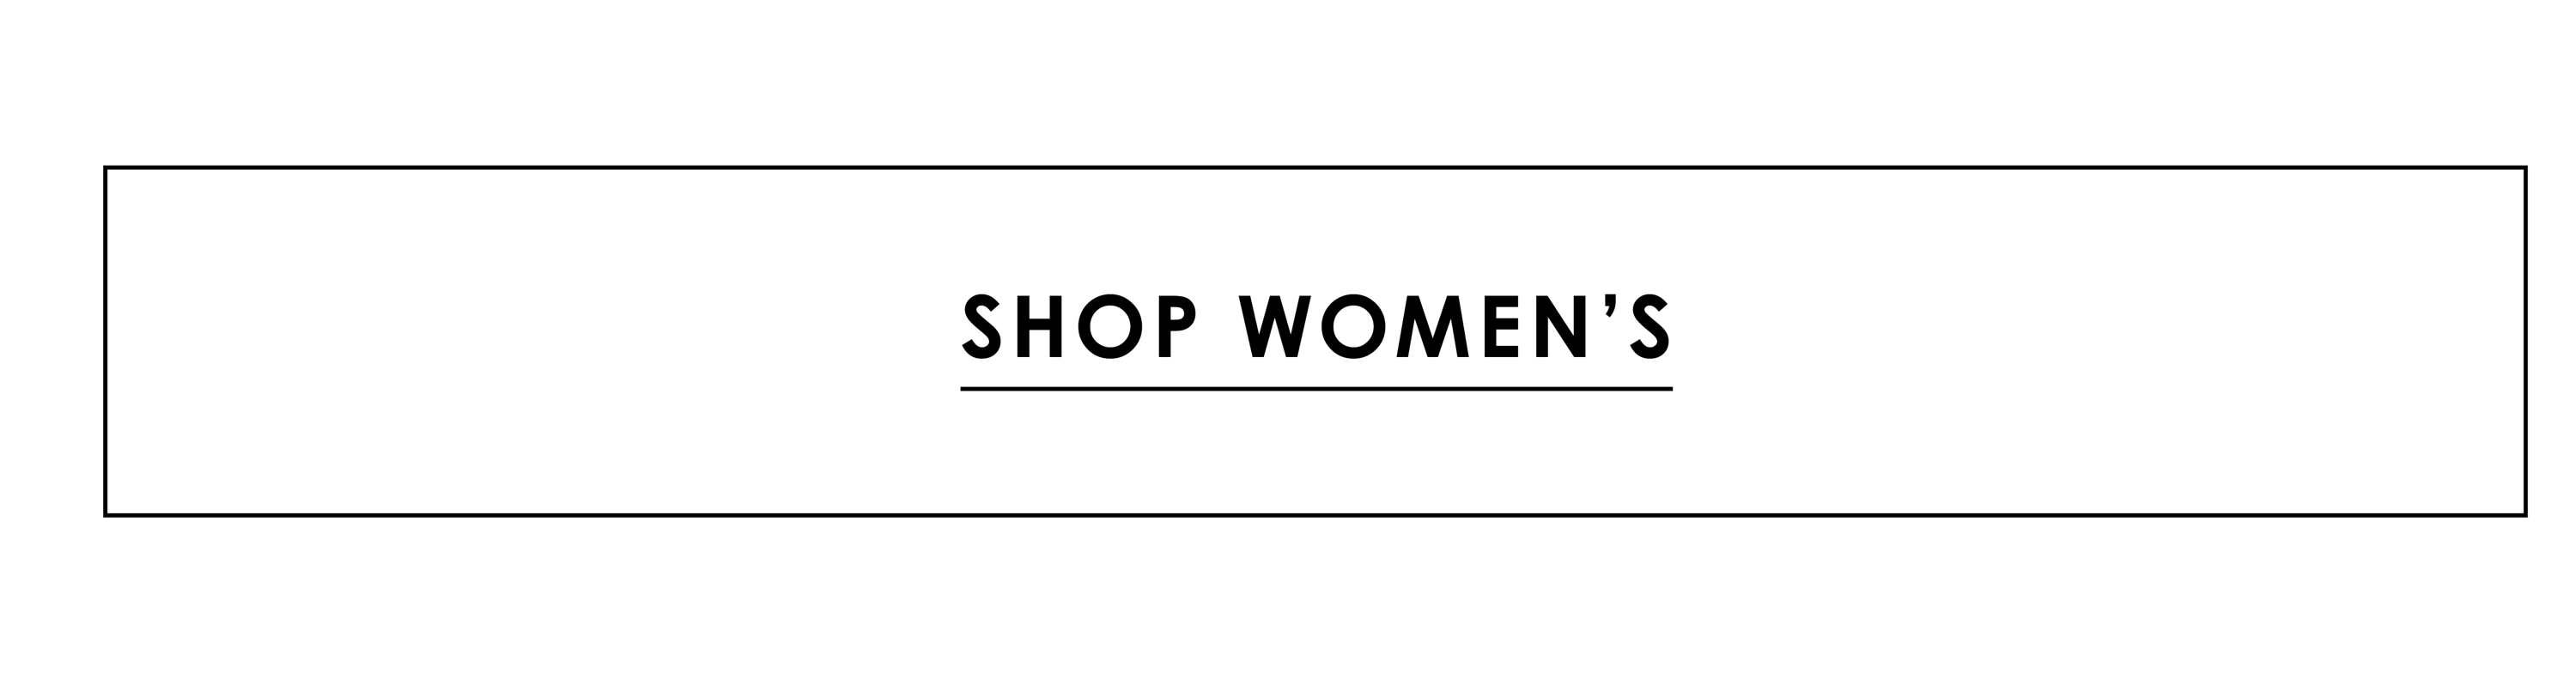 Shop Women's Sale